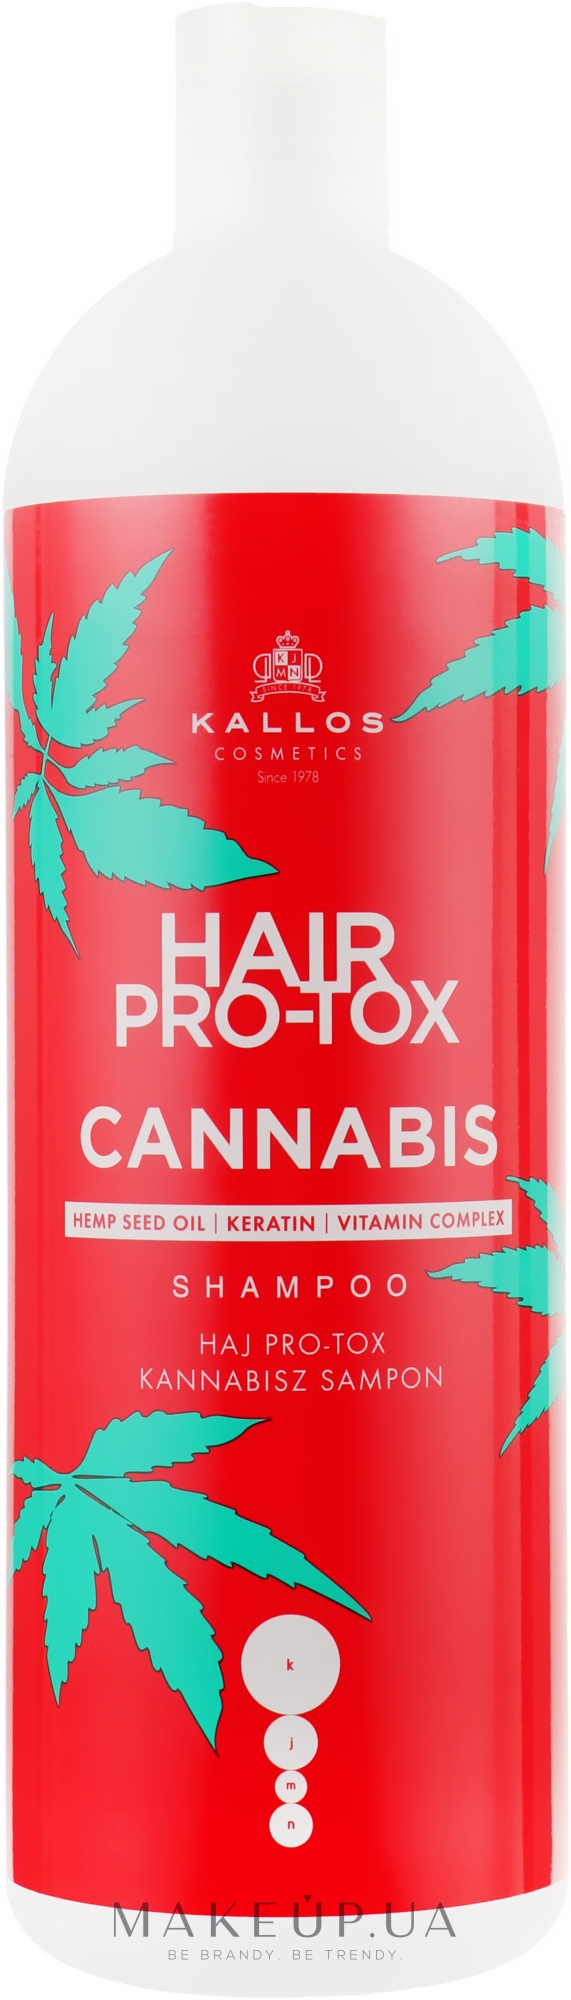 Шампунь для волосся з олією насіння конопель - Kallos Pro-tox Cannabis Shampoo — фото 1000ml